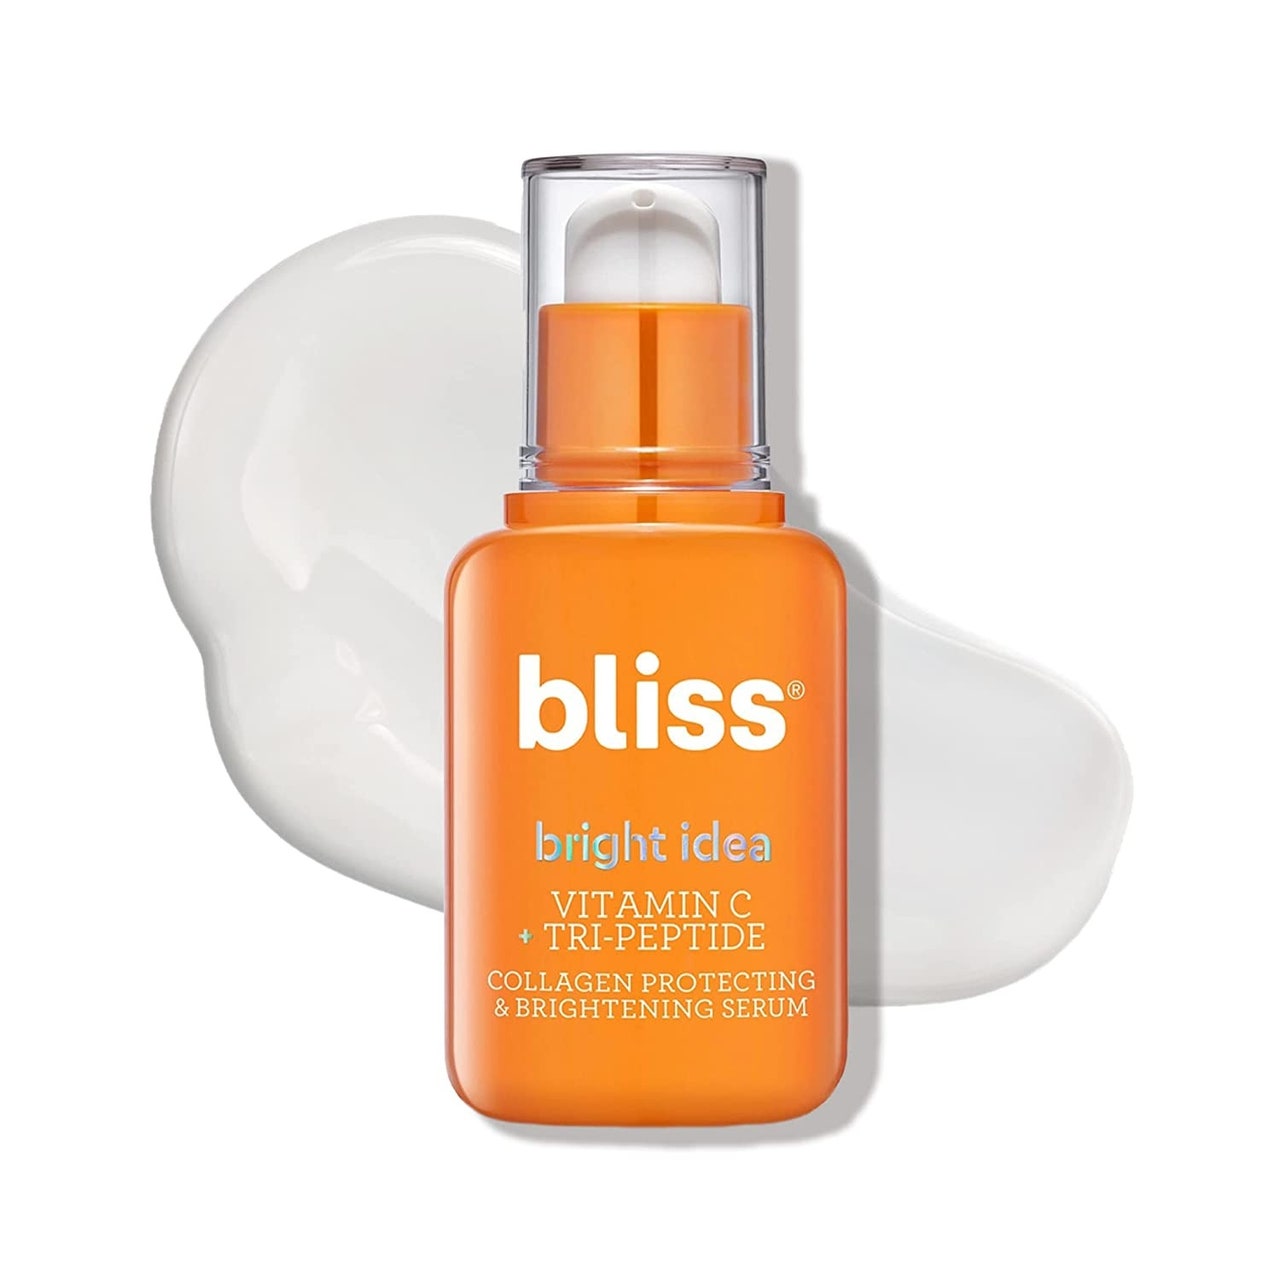 Eine orangefarbene Flasche Bliss Bright Idea Vitamin C + Tri-Peptide Brightening Serum auf weißem Hintergrund